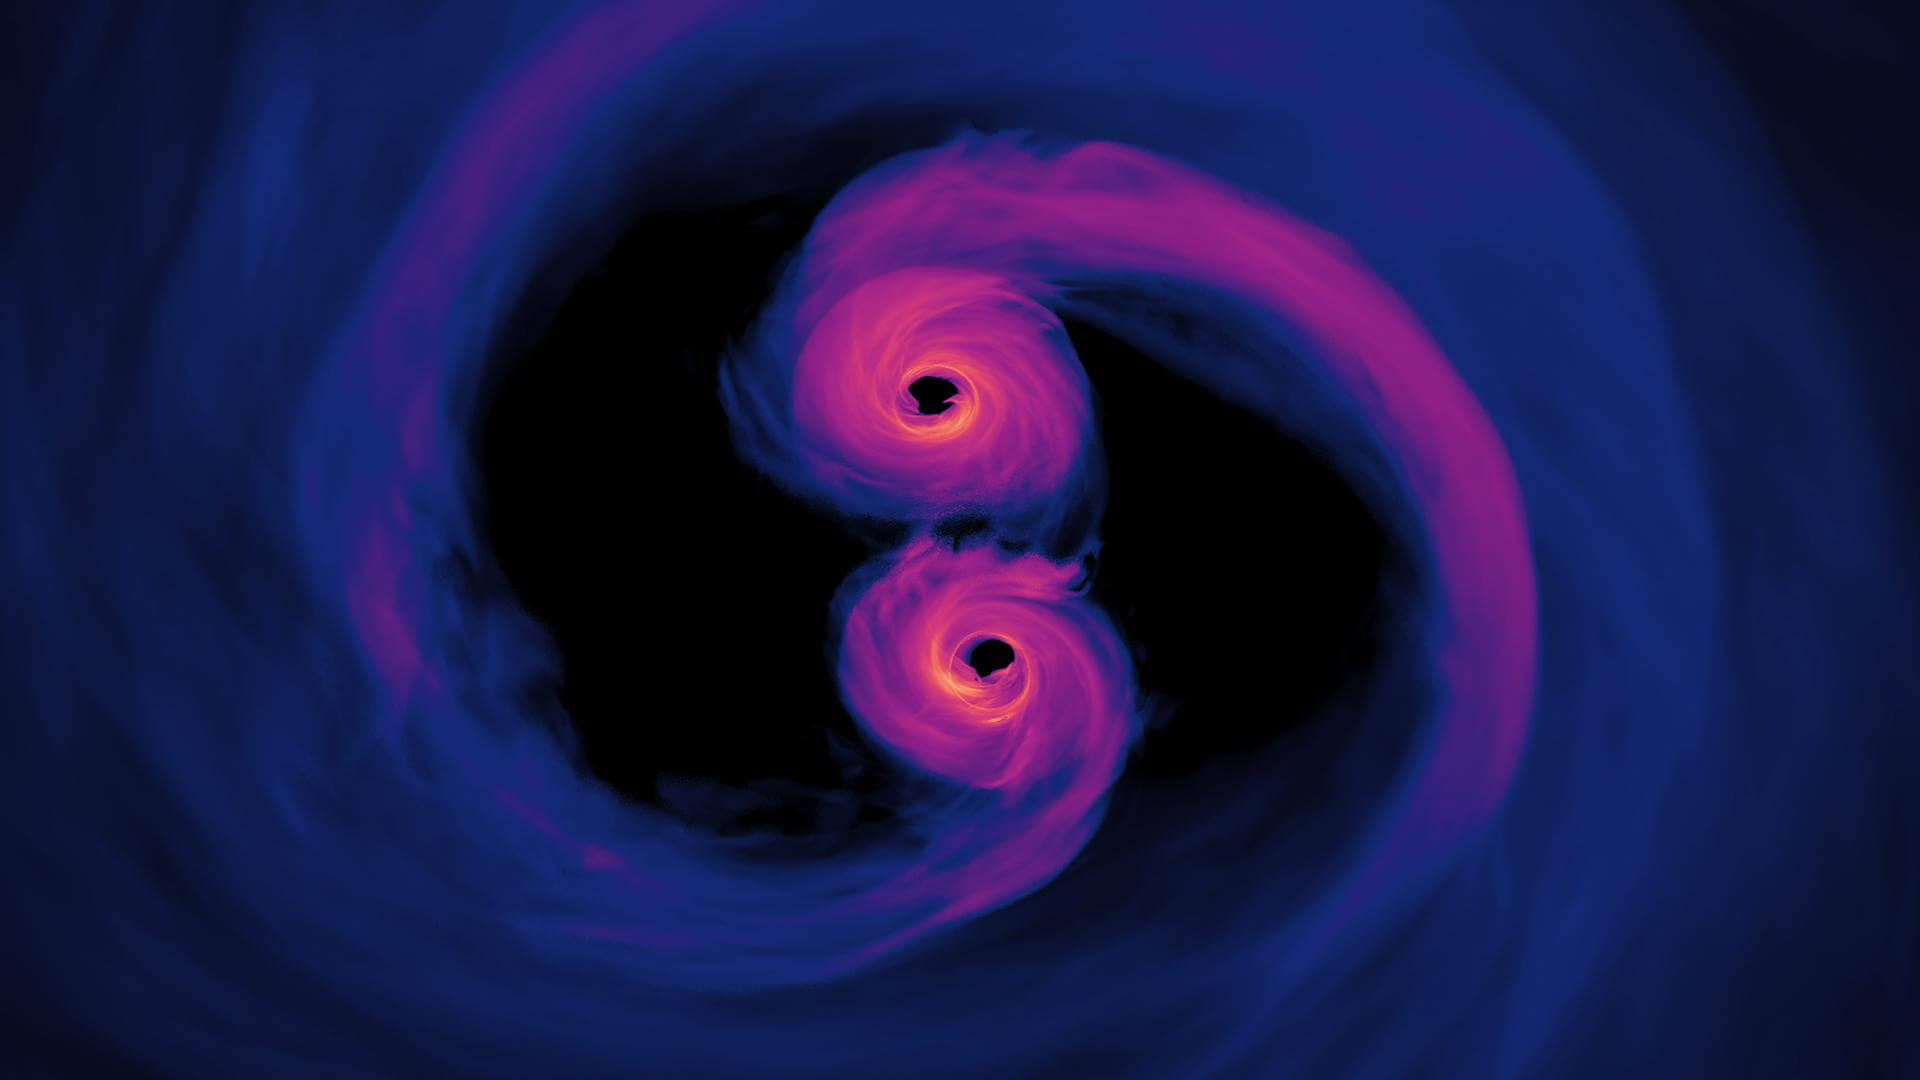 За горизонтом событий. В 2017 году физики доказали существование гравитационных волн, распространившихся в результате столкновения двух сверхмассивных черных дыр. Фото